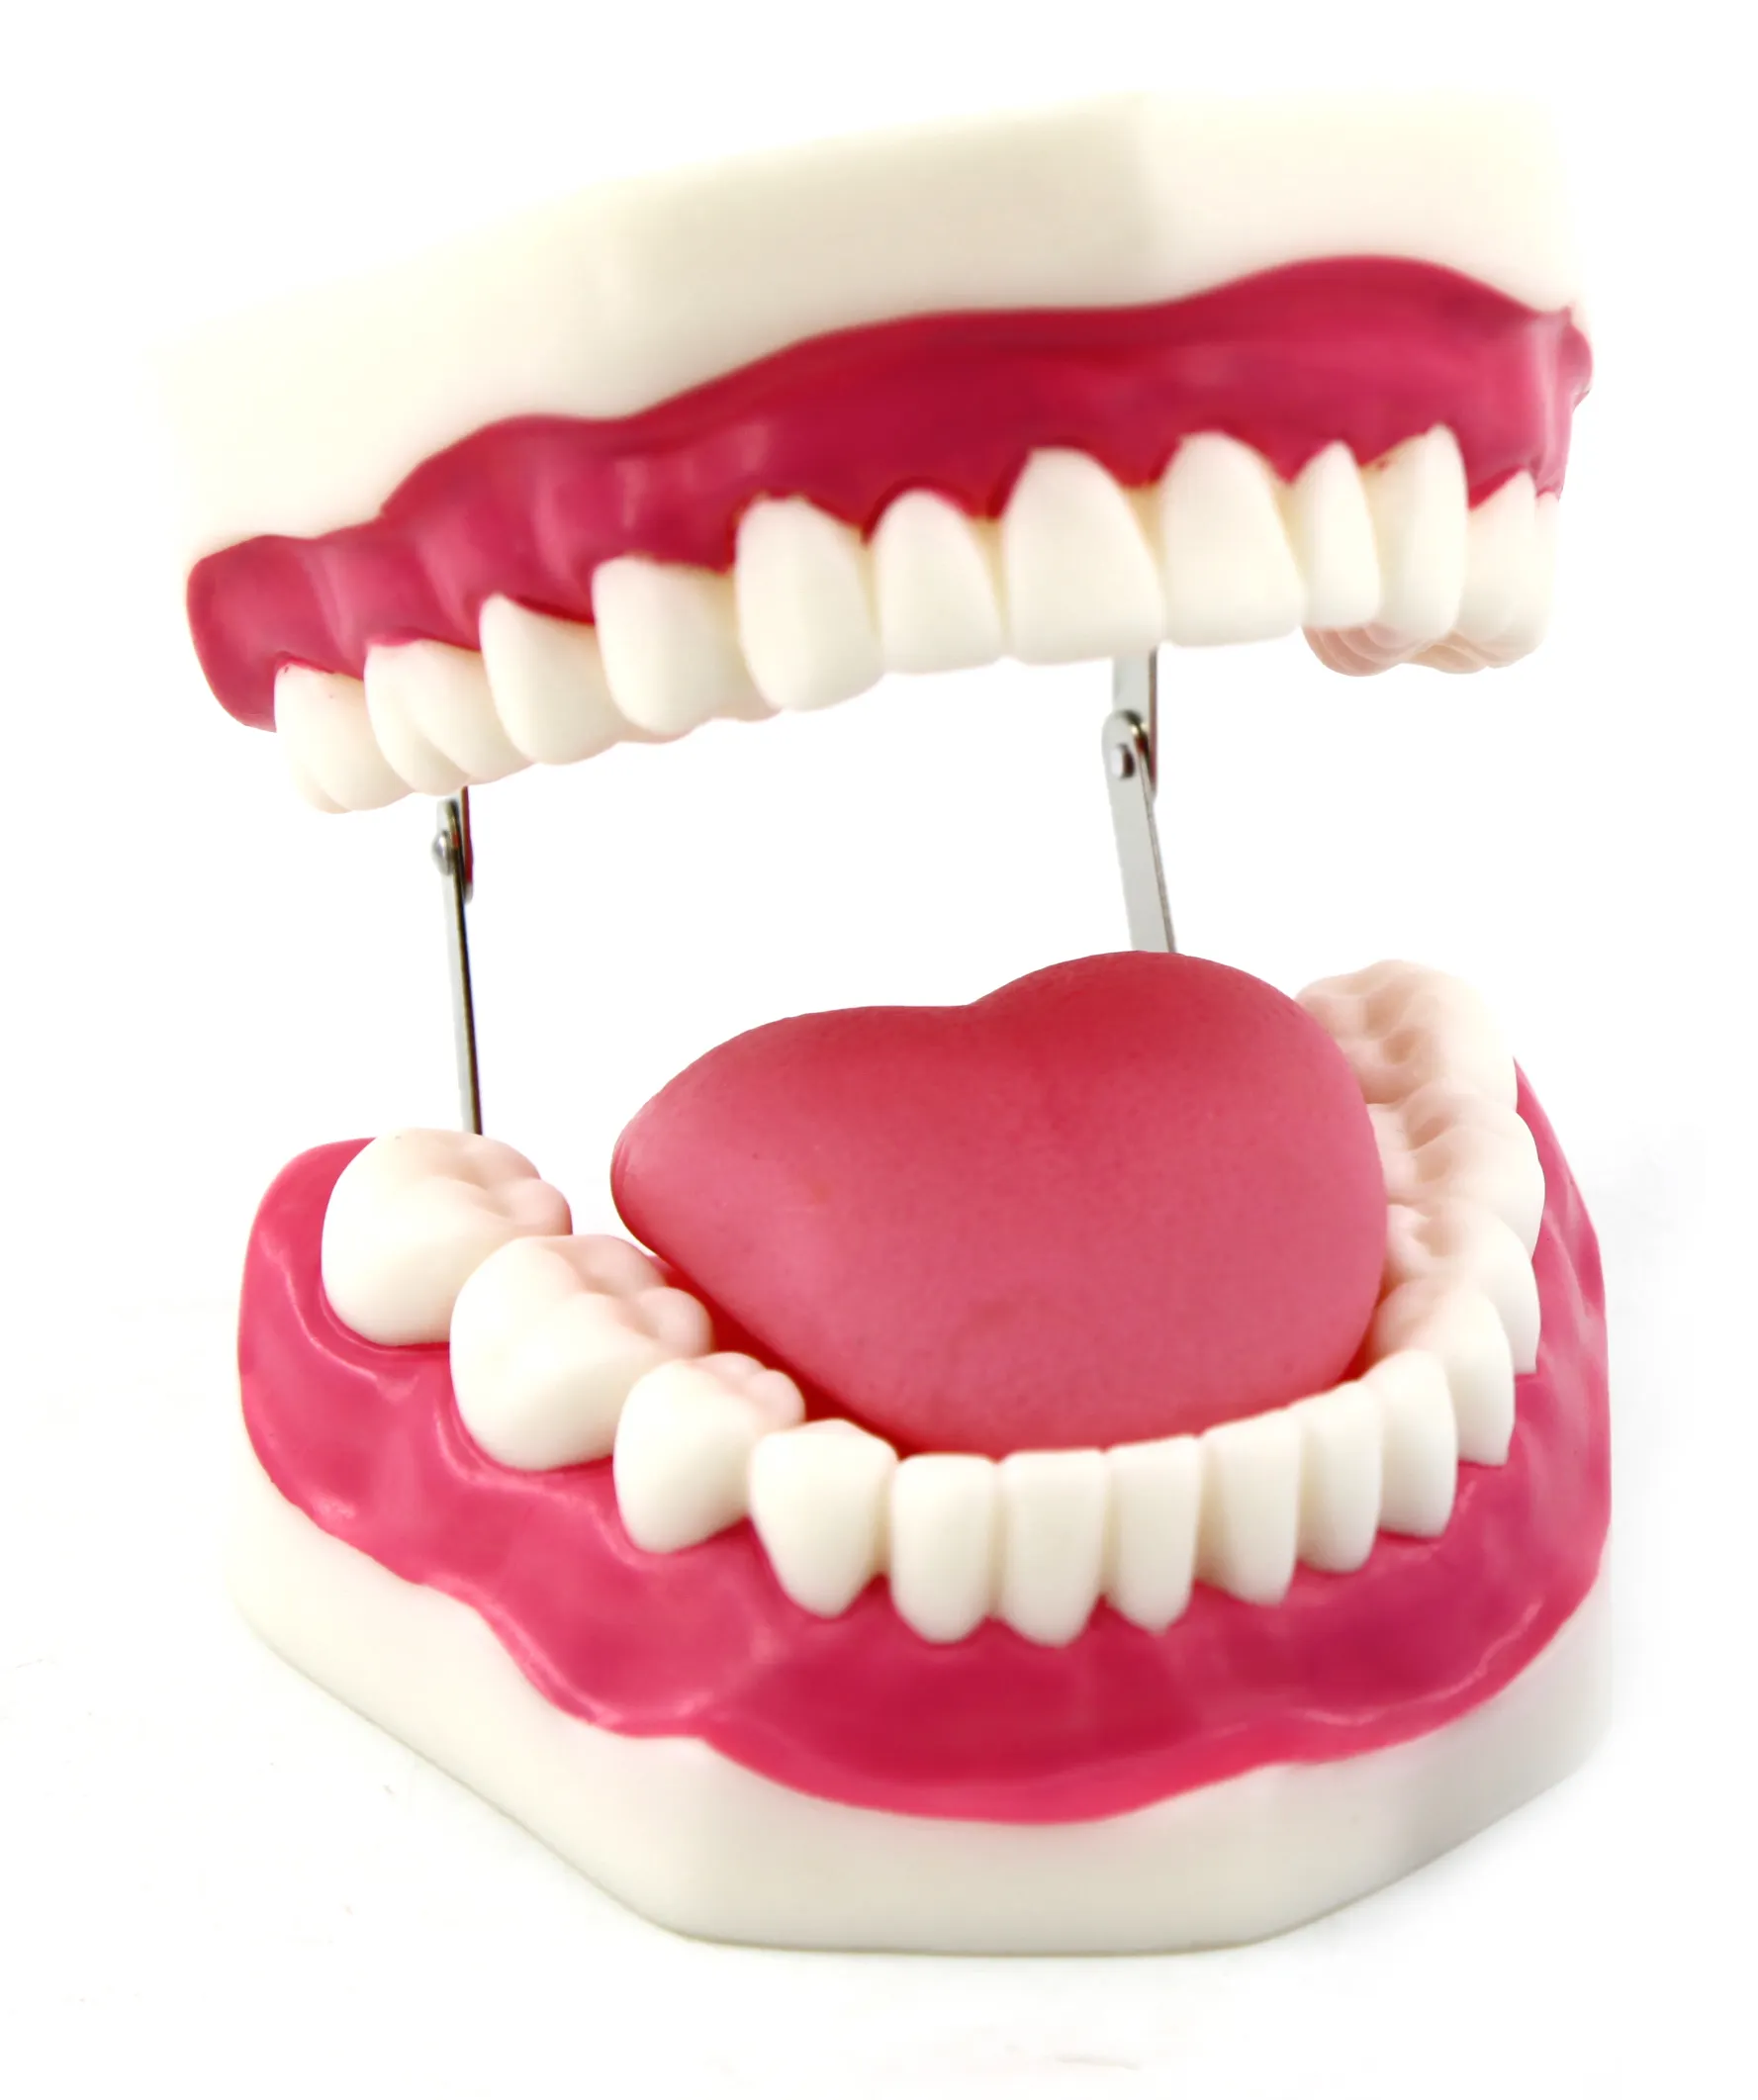 ที่ขายดีที่สุดของมนุษย์ทันตกรรมฟันรุ่นสำหรับการศึกษาฟันมนุษย์ชุดสุขอนามัยที่มีลิ้นกรามฟันรุ่น